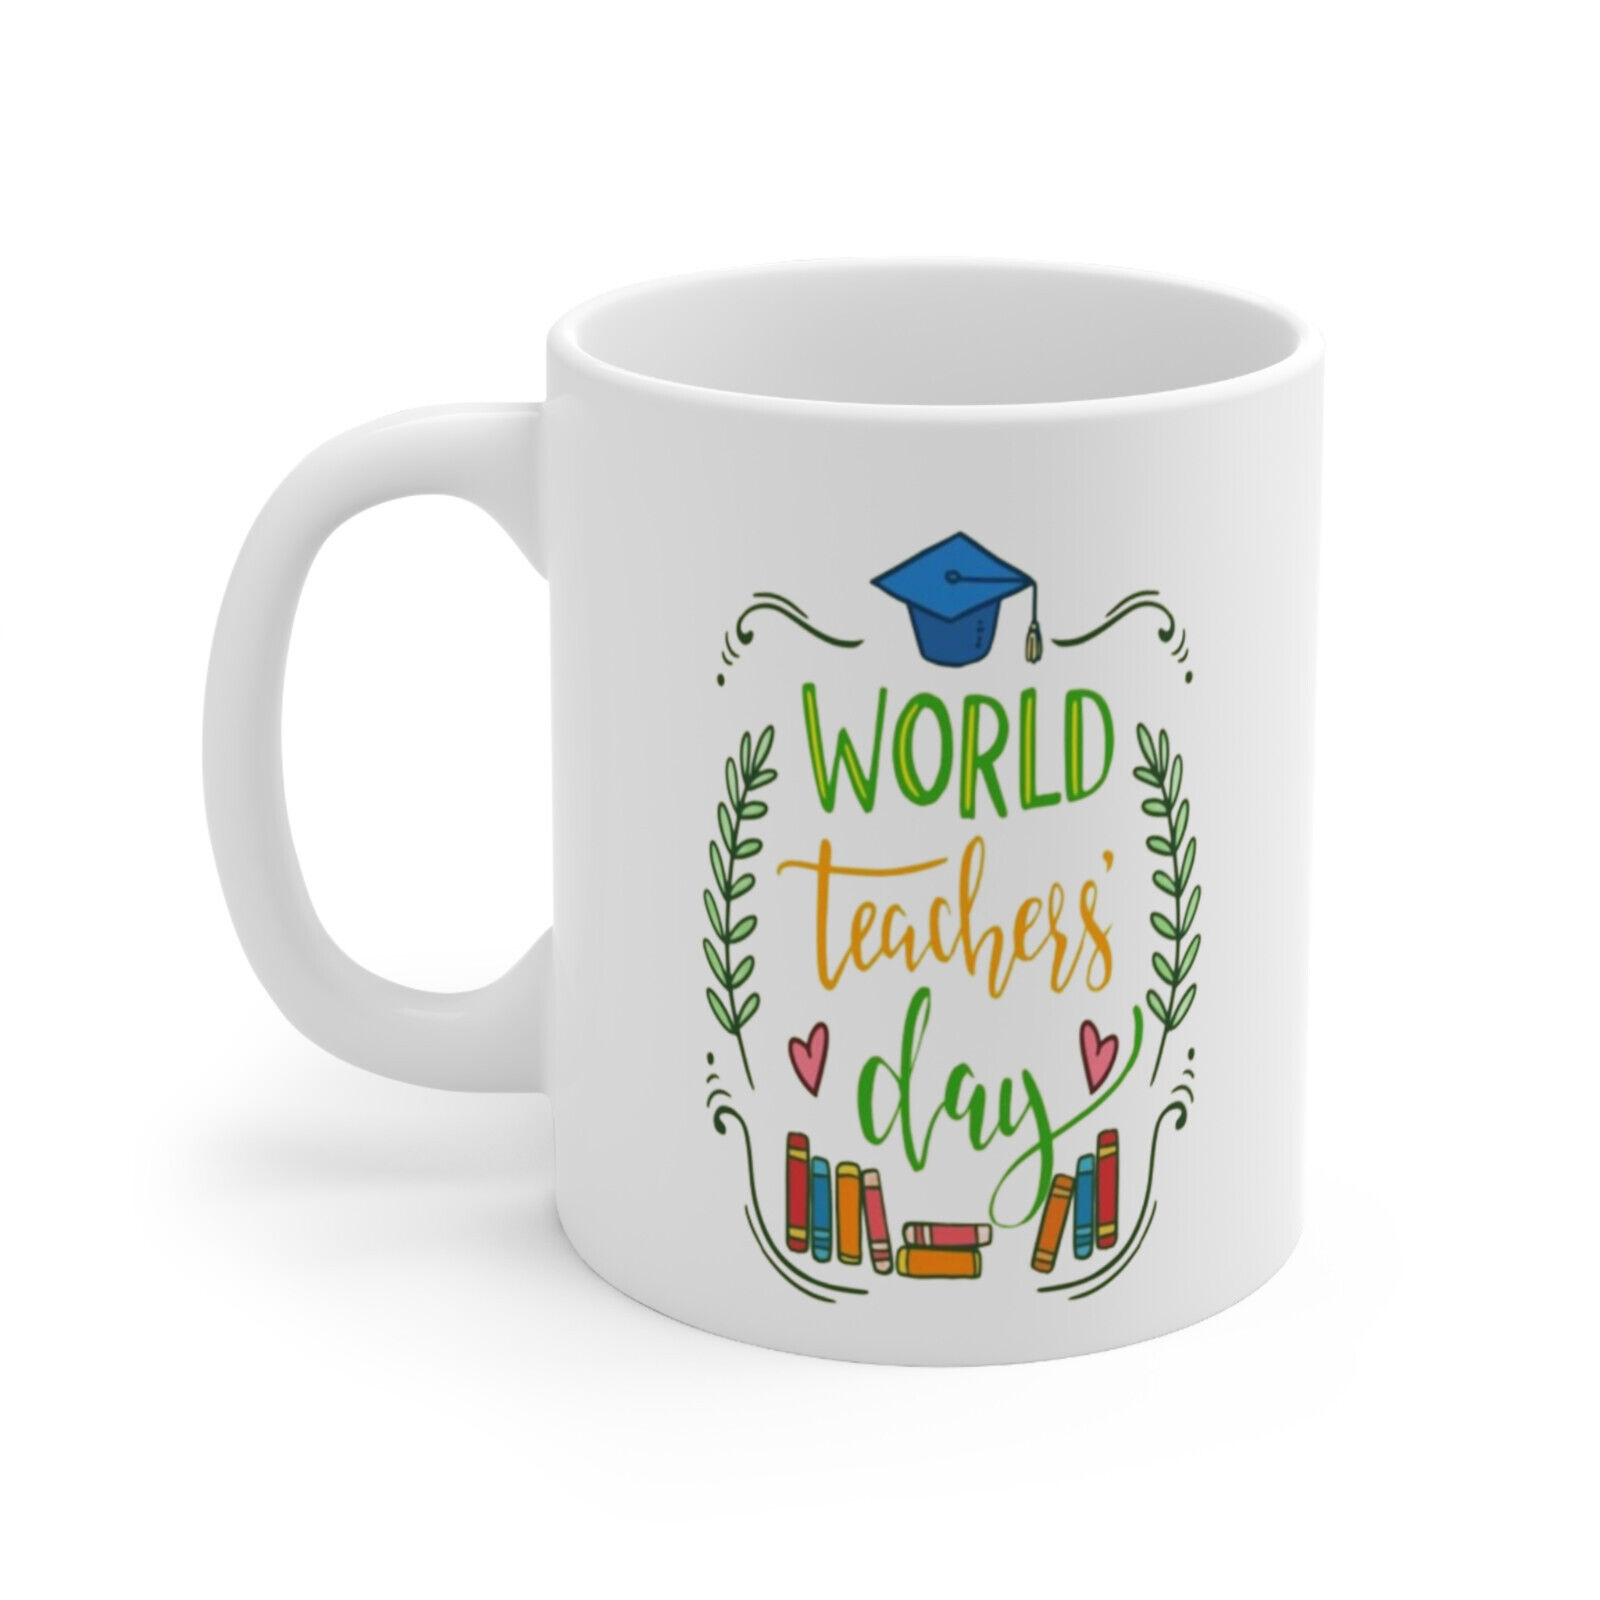 coffee mug world teacher day ceramic 11 oz white color